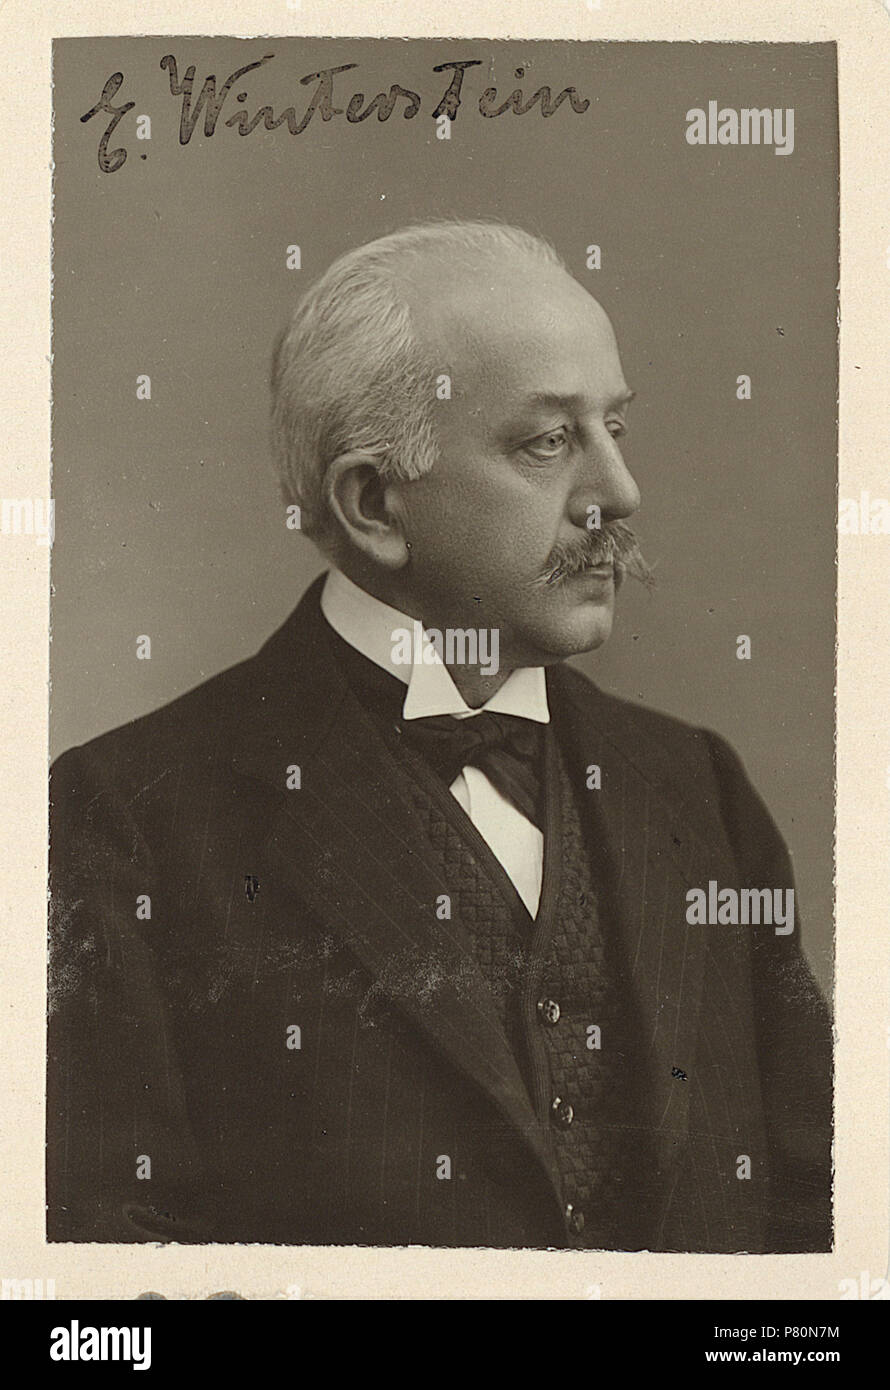 . Winterstein, Ernst (1865-1949) before 1921 150 ETH-BIB-Winterstein, Ernst (1865-1949)-Portrait-Portr 02881 Stock Photo